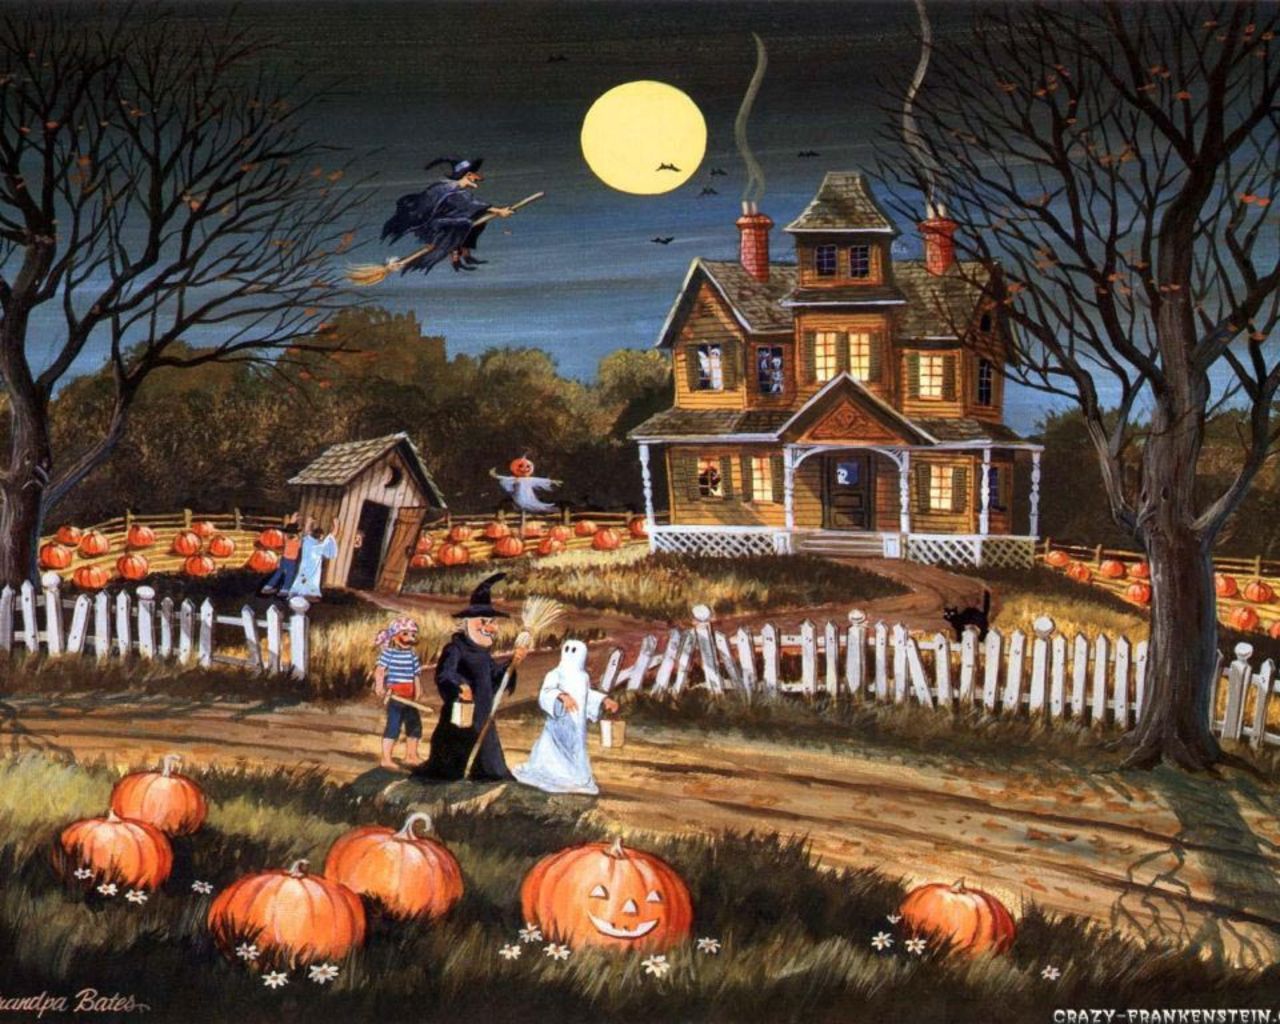 Halloween Wallpaper: Trick Or Treat. Halloween Background, Halloween Image, Halloween Desktop Wallpaper